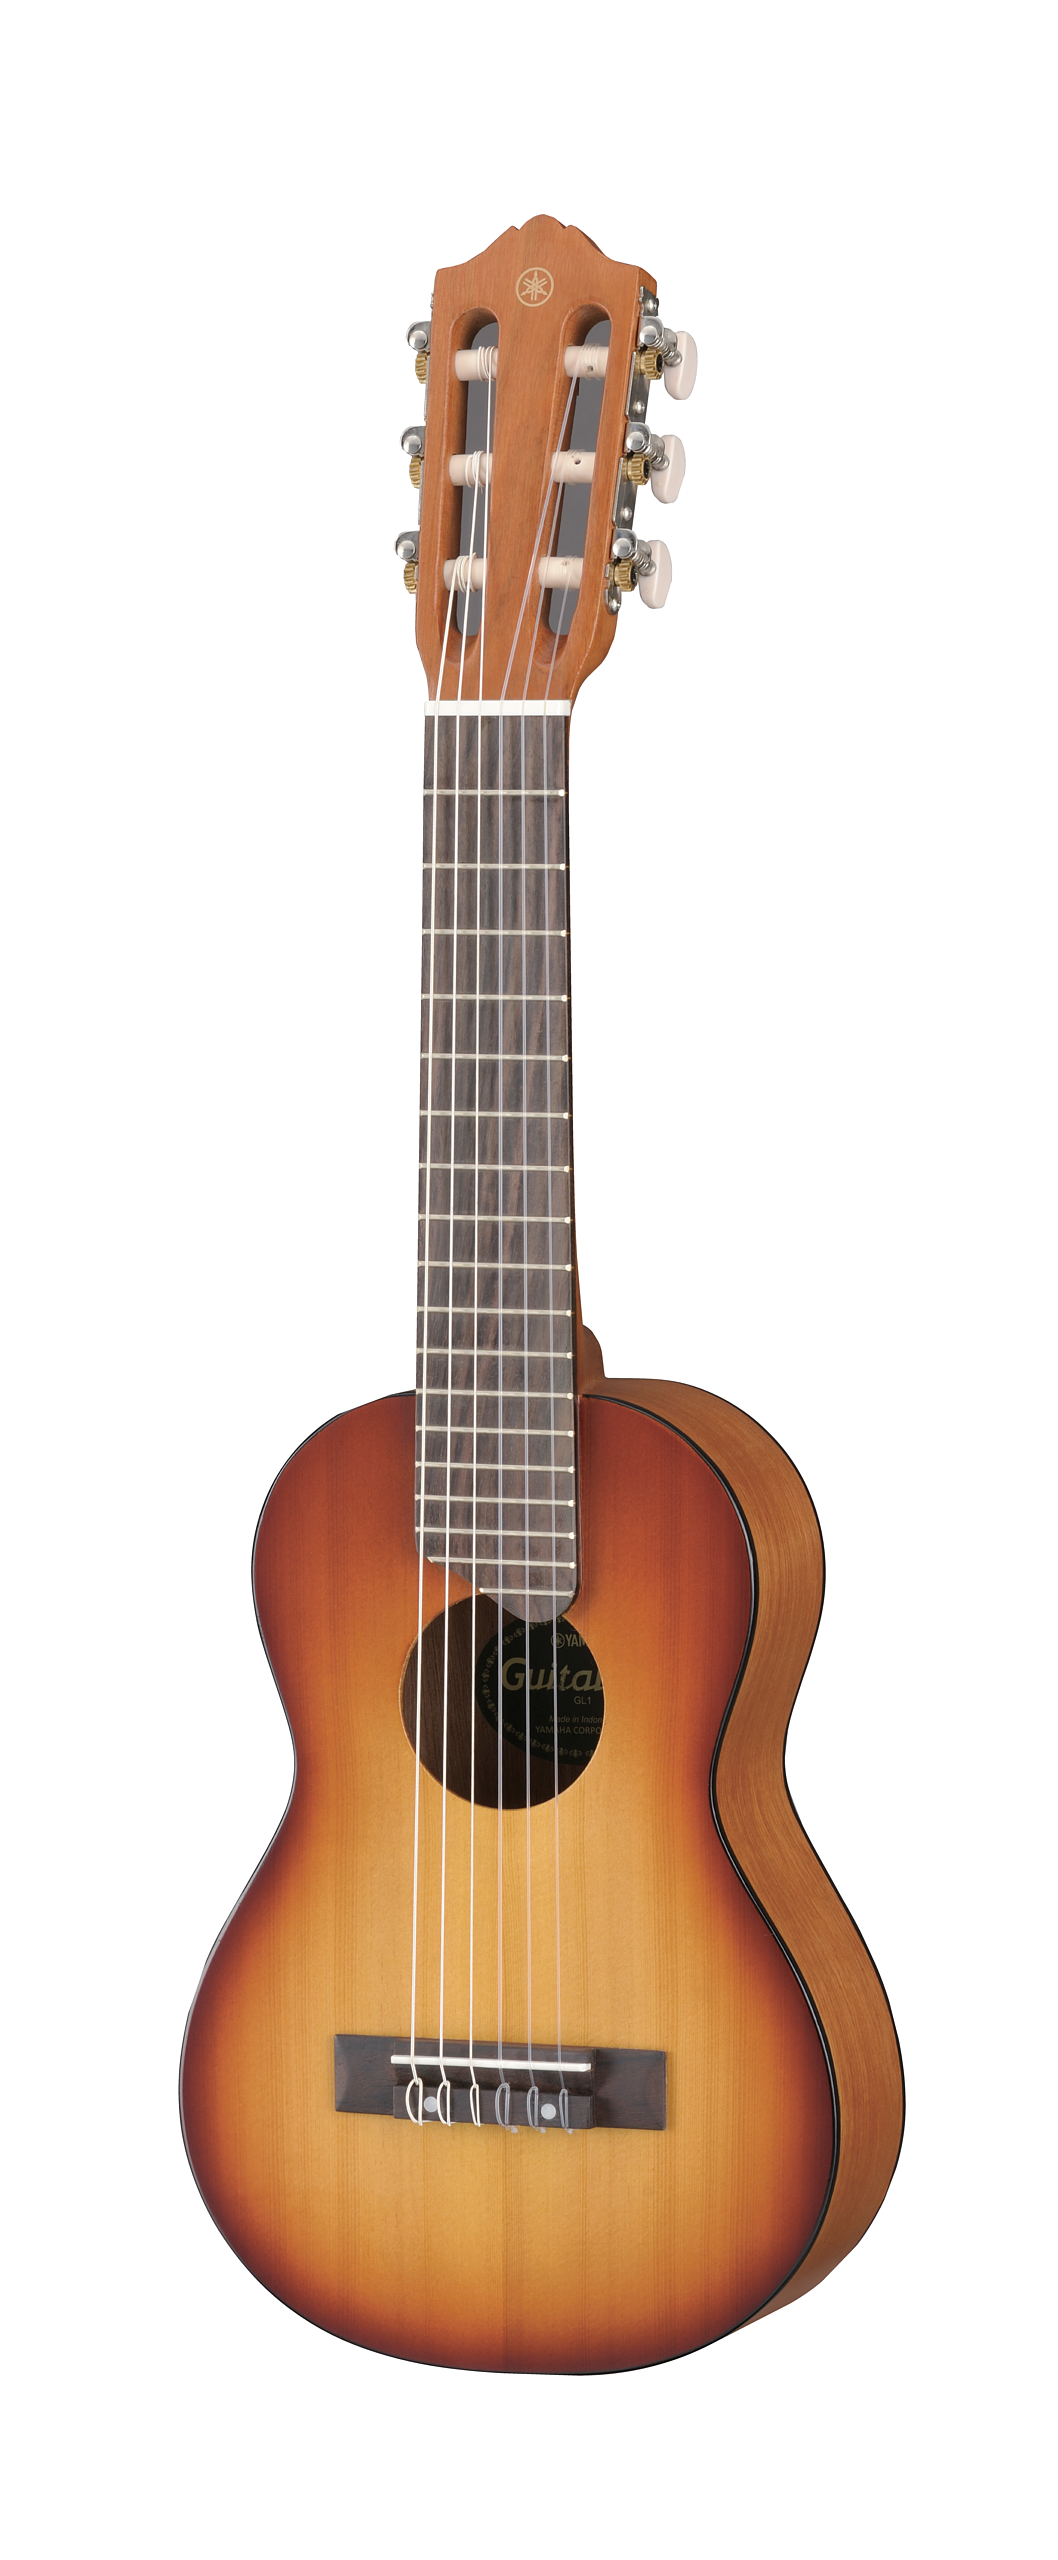 Yamaha GL1 Guitarlele Tobacco Brown Sunburst